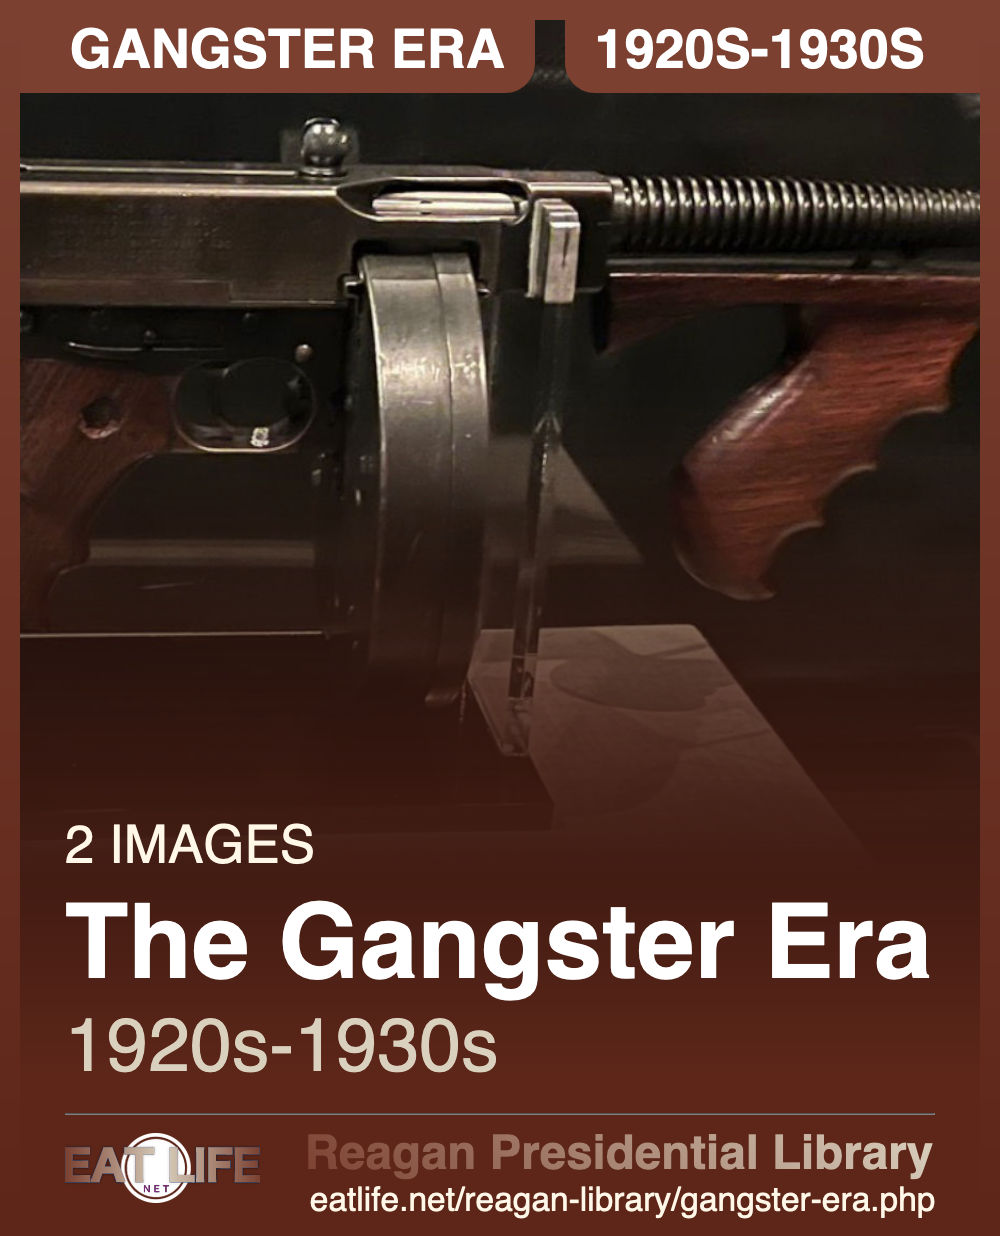 The Gangster Era